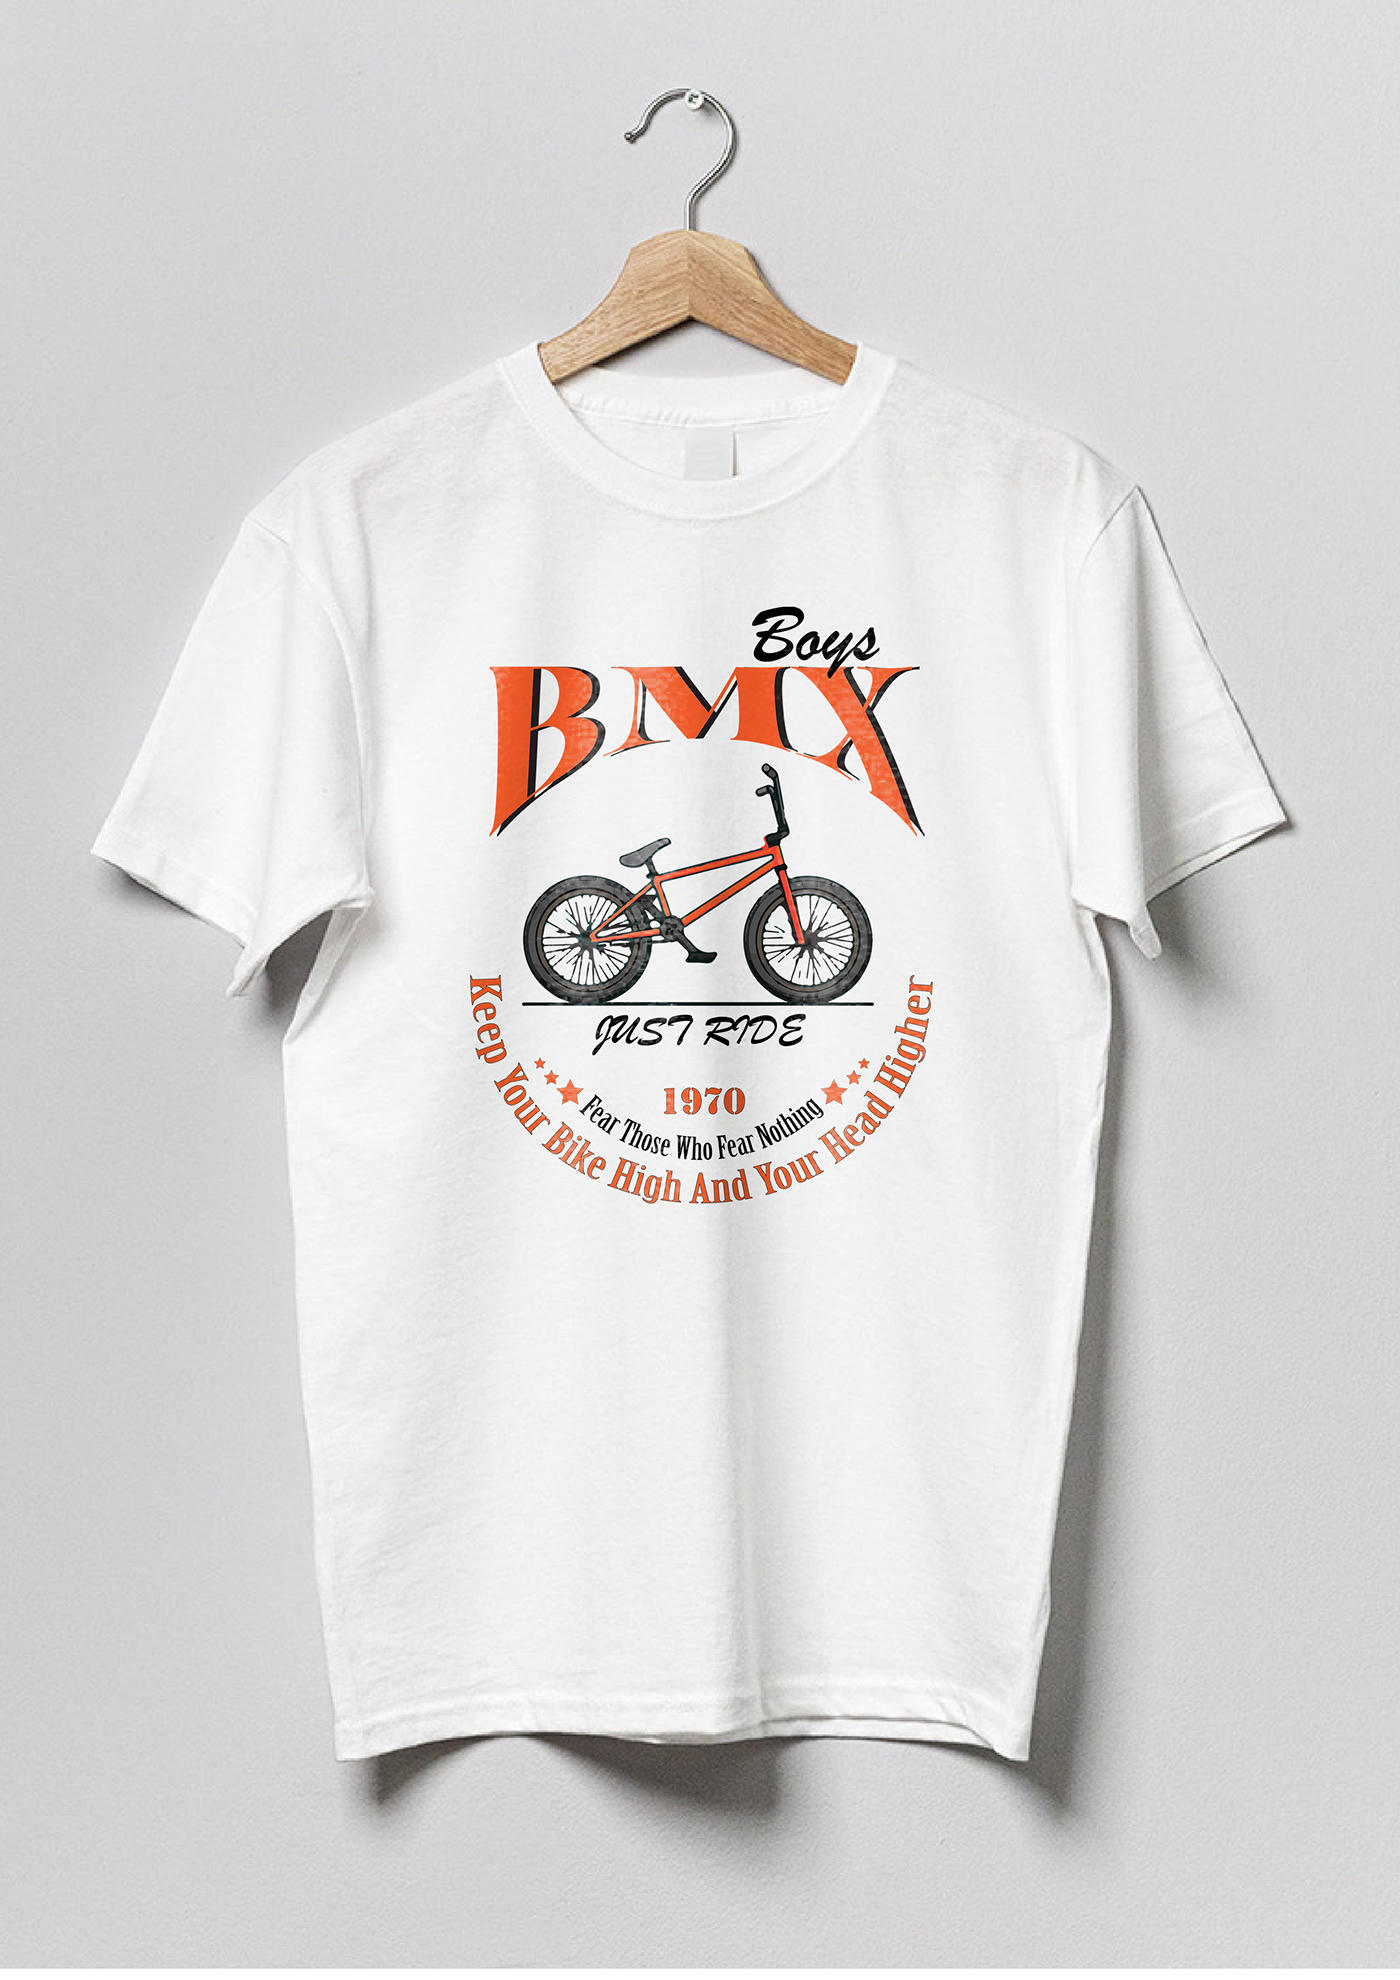 t-shirt Tshirt Design artwork T-Shirt Artwork Print on demand bmx freestyle bmx racing bmx bike